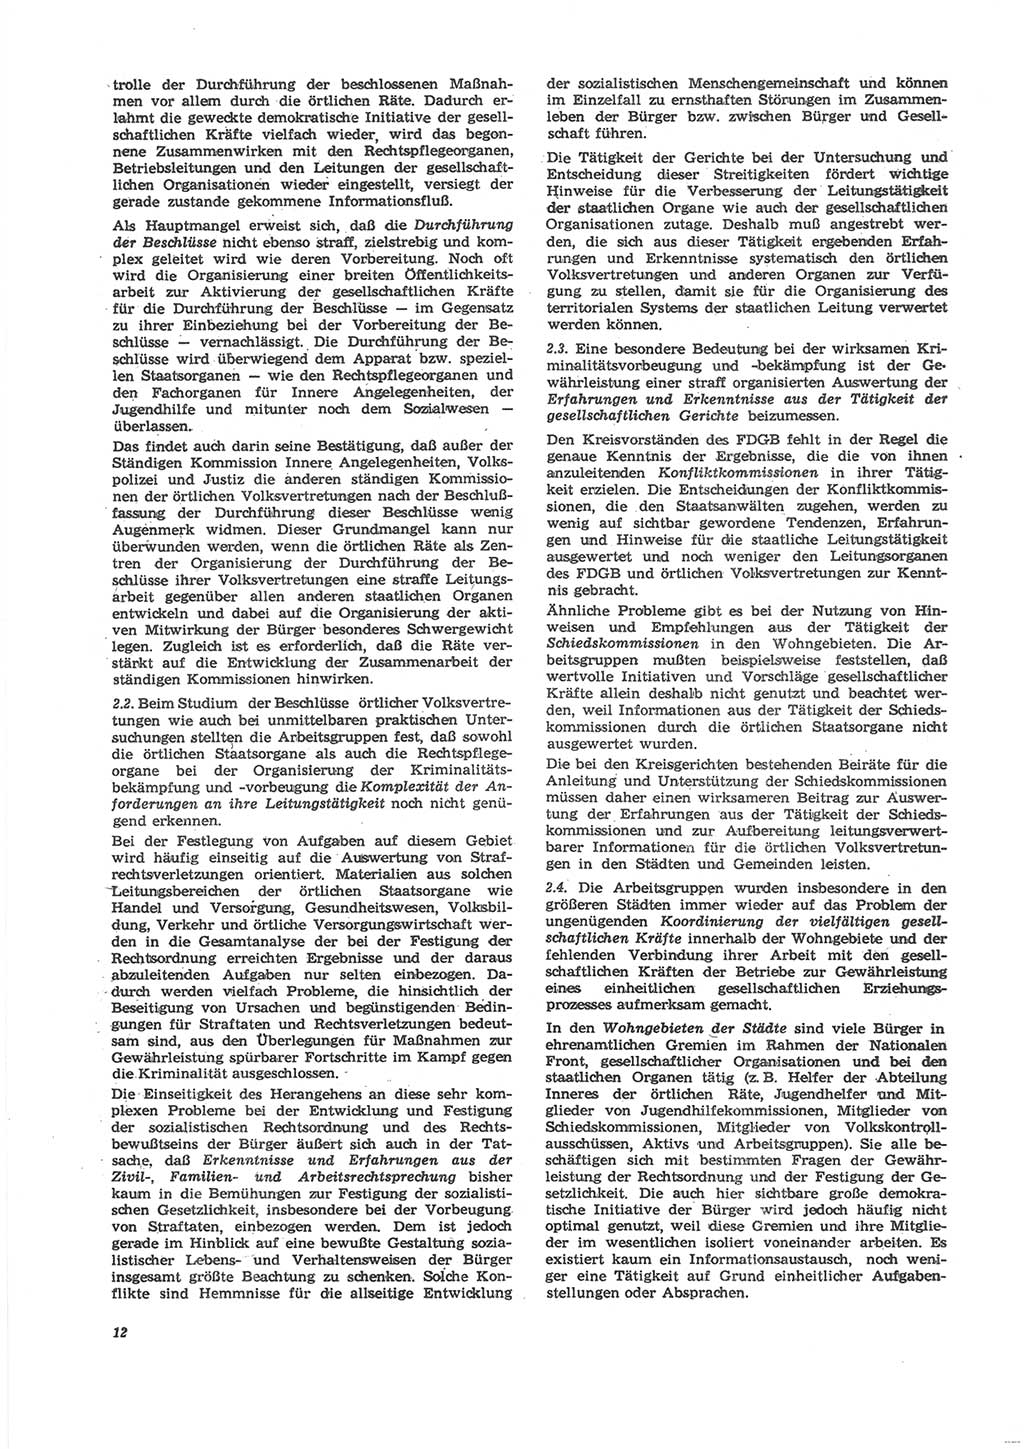 Neue Justiz (NJ), Zeitschrift für Recht und Rechtswissenschaft [Deutsche Demokratische Republik (DDR)], 24. Jahrgang 1970, Seite 12 (NJ DDR 1970, S. 12)